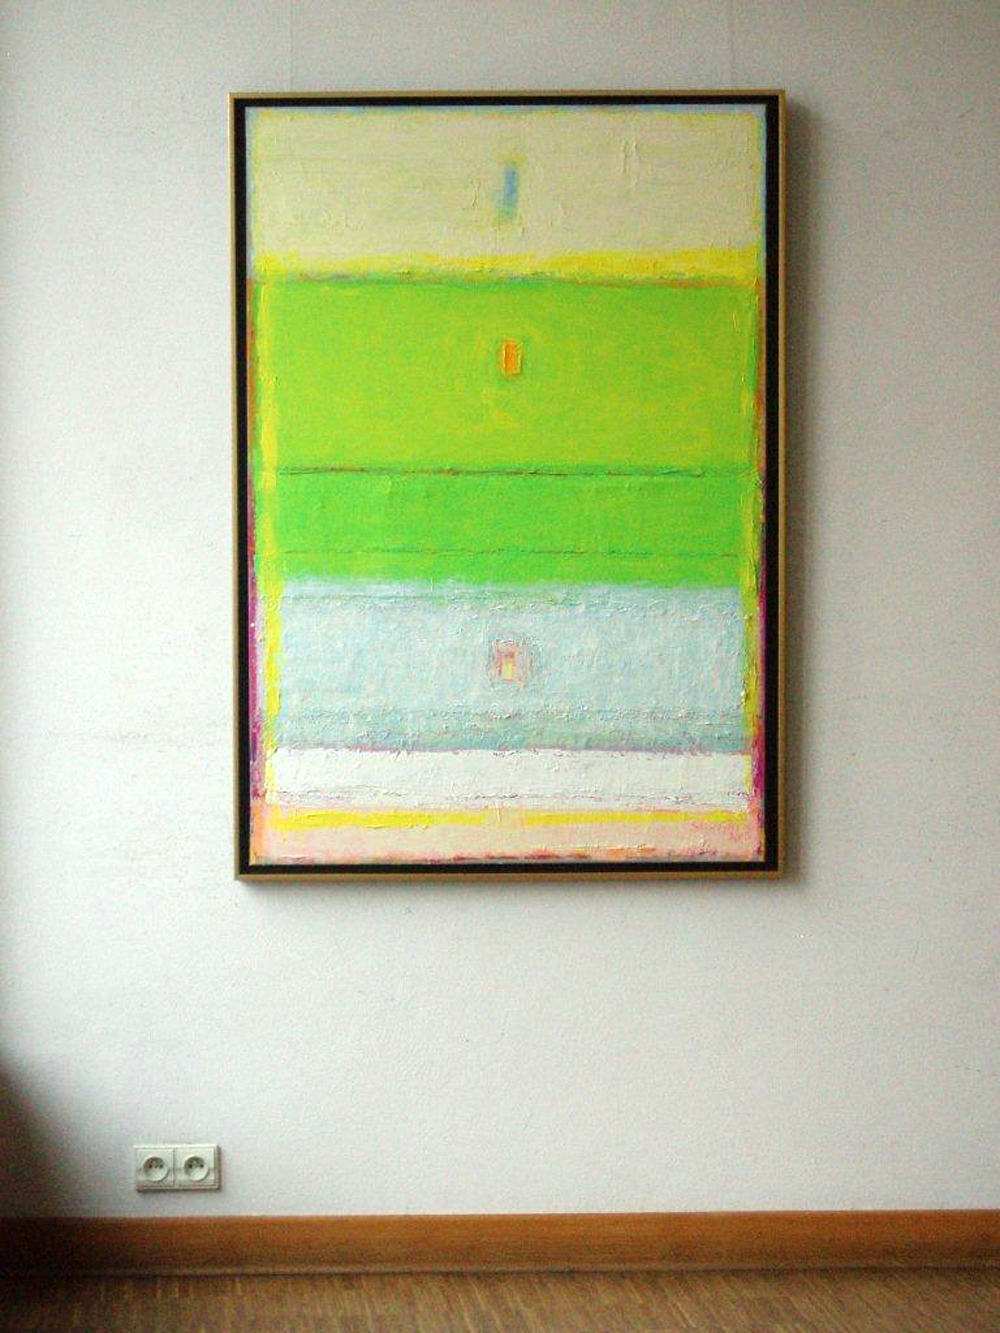 Sebastian Skoczylas - Kind of transparency (Oil on canvas | Größe: 95 x 135 cm | Preis: 4200 PLN)